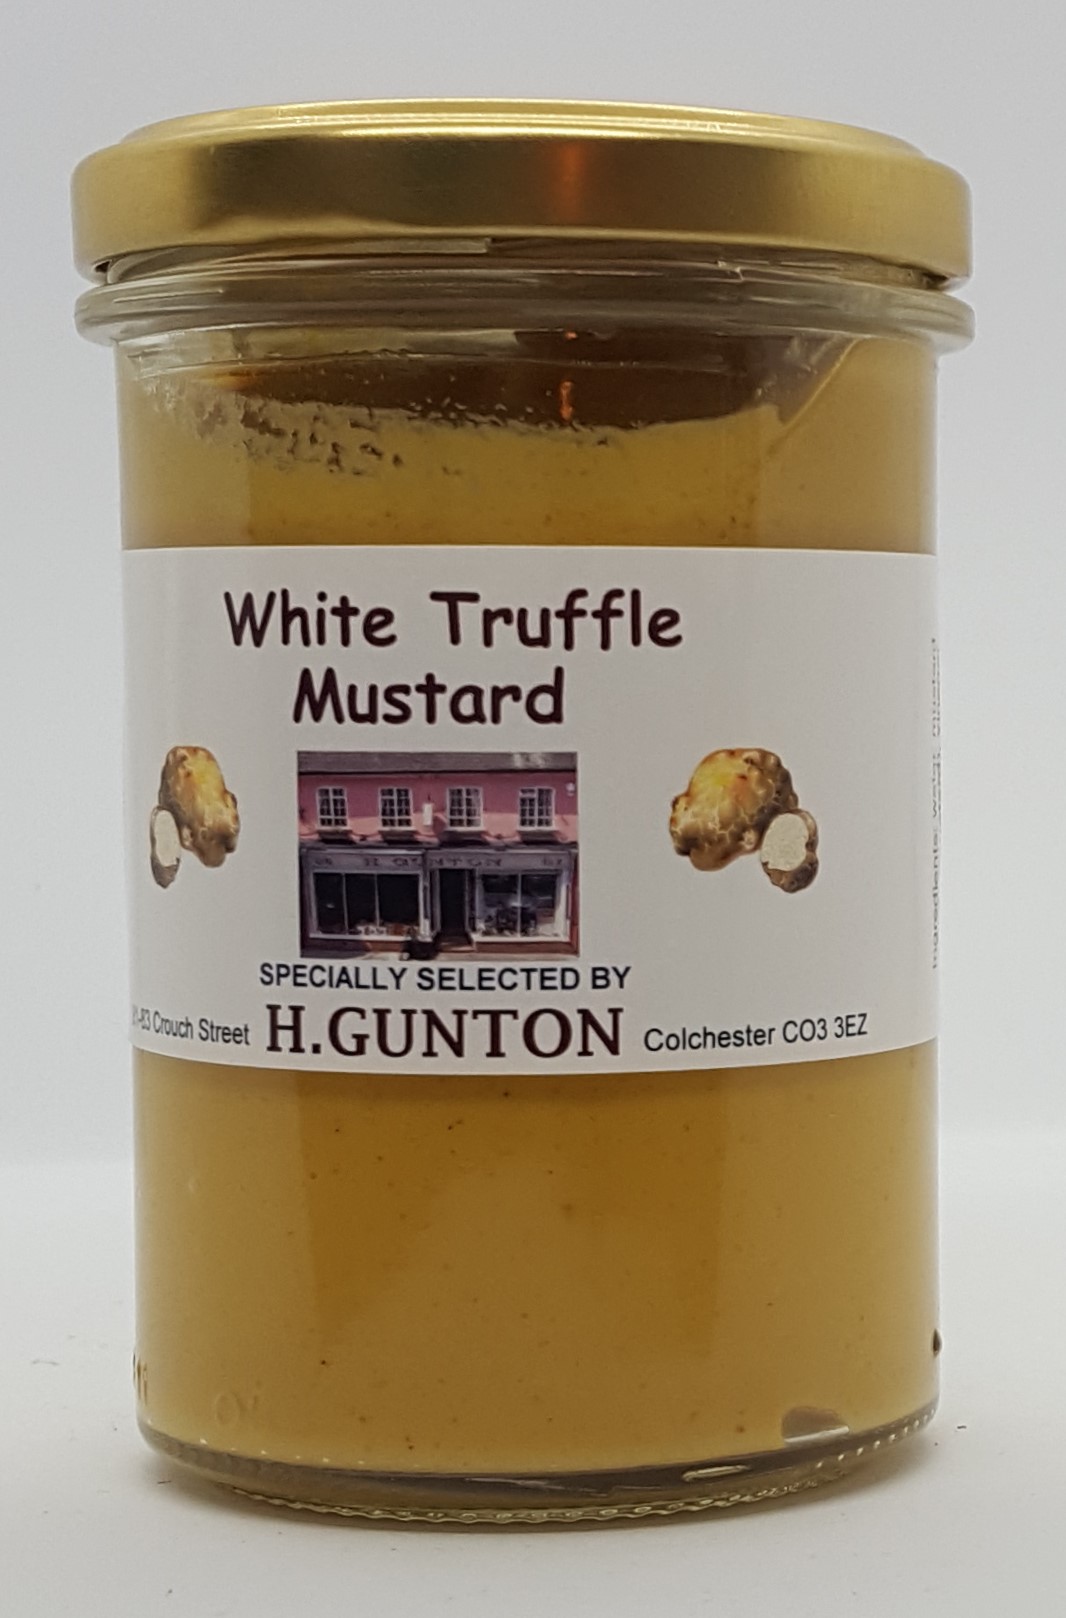 White Truffle Mustard